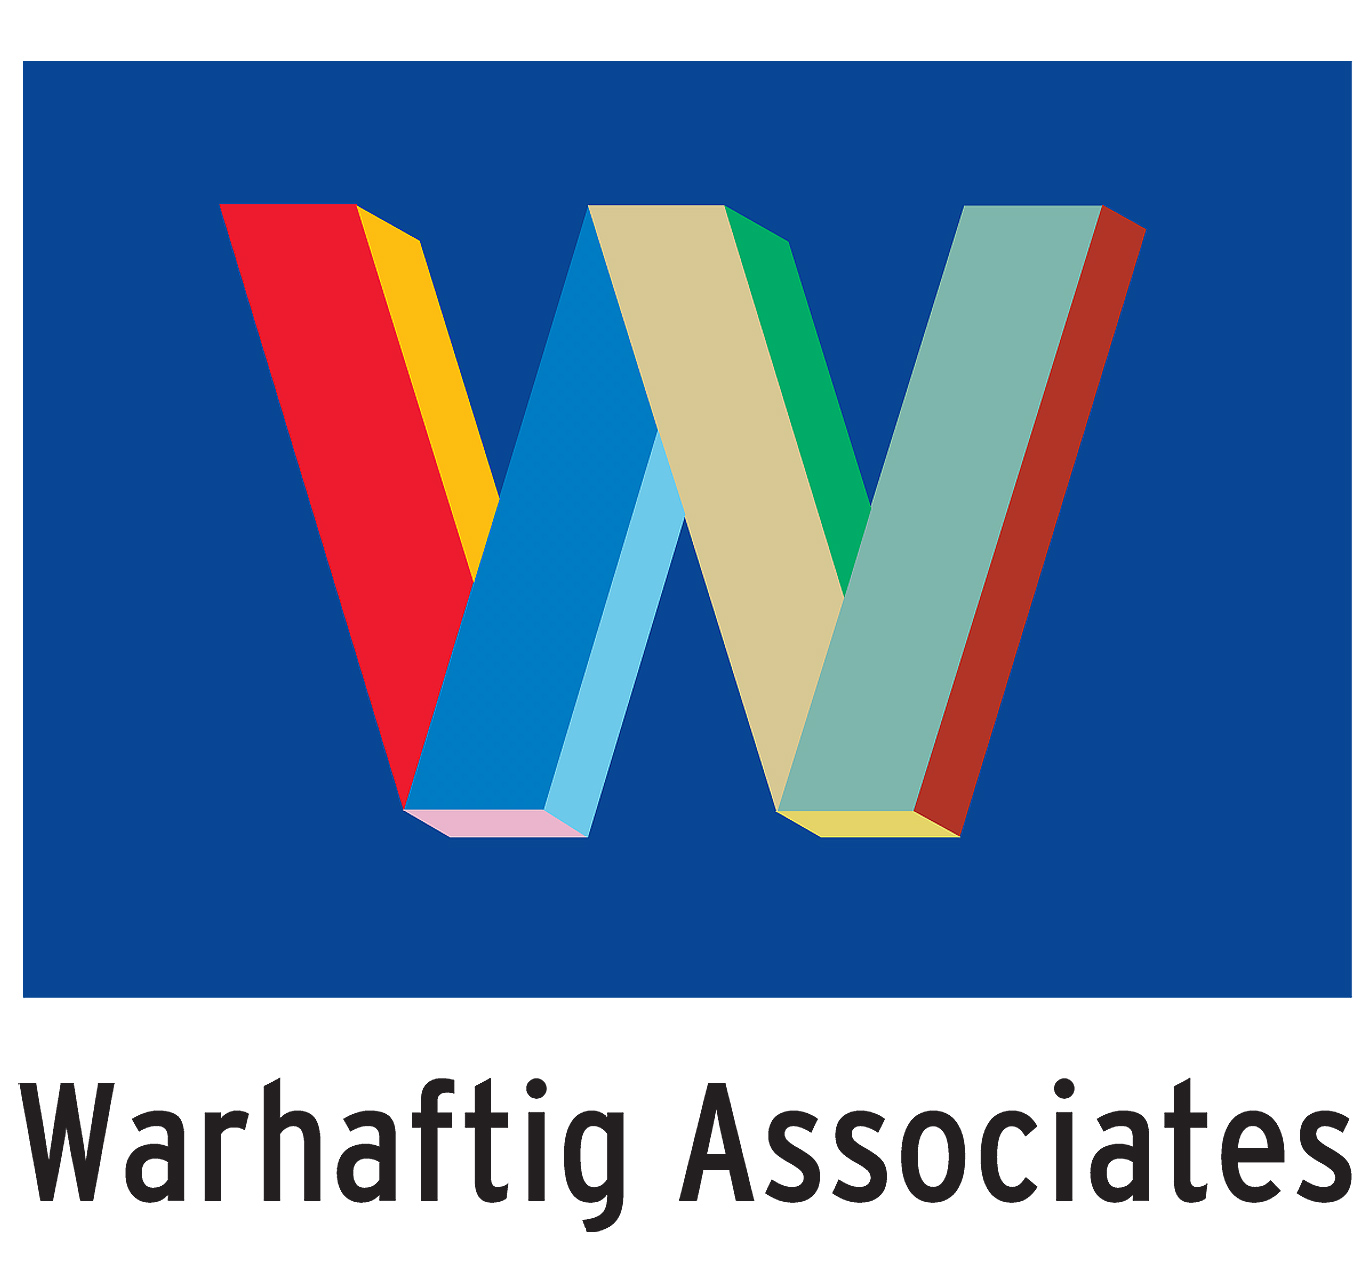 Warhaftig associates logo